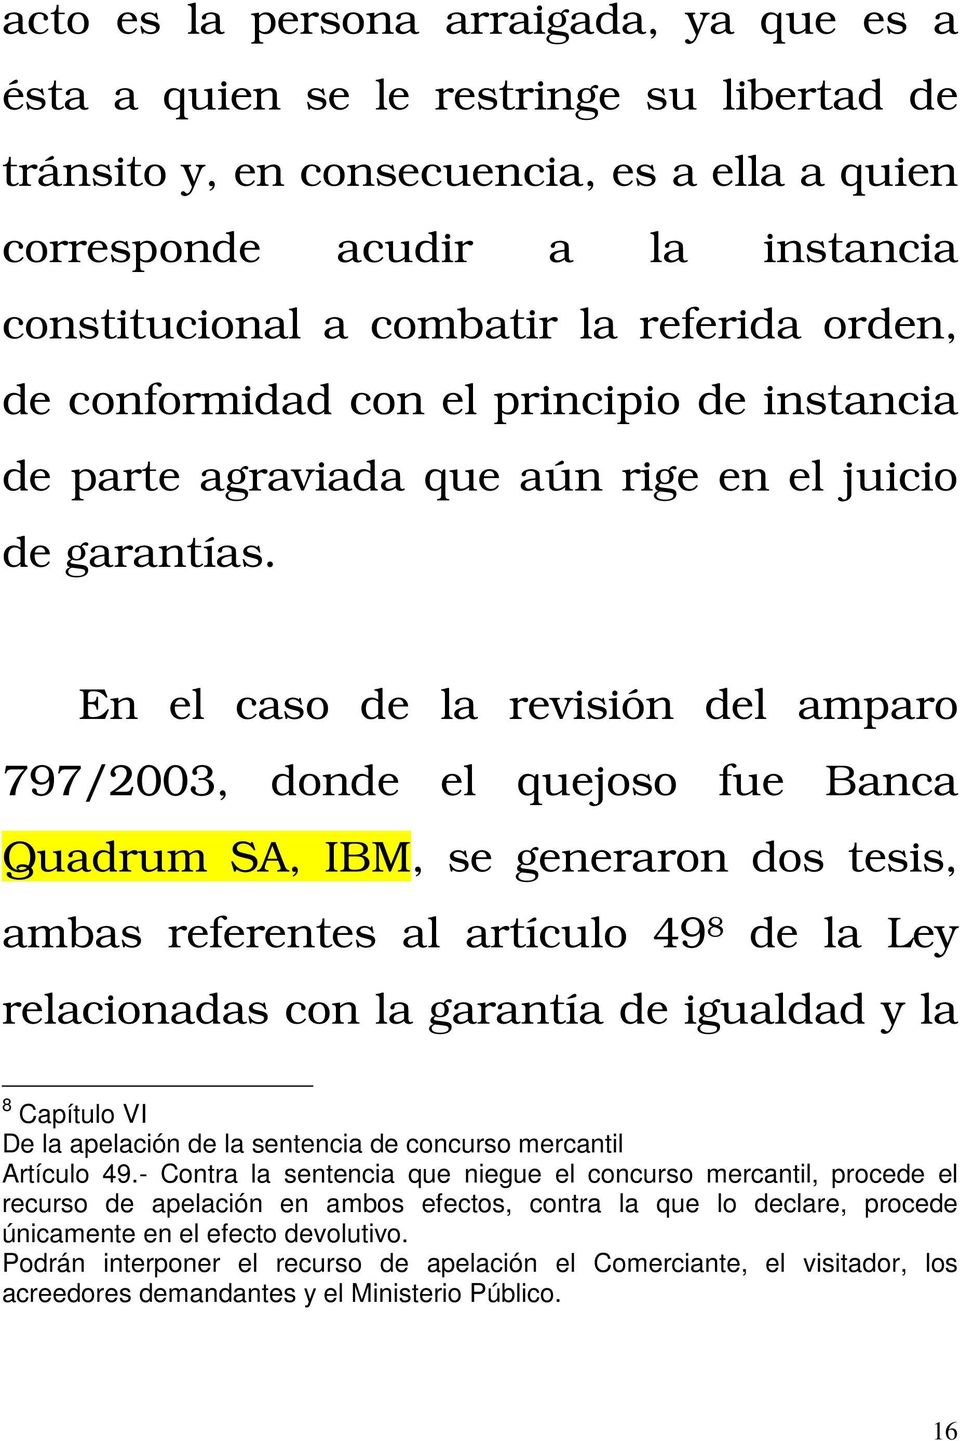 En el caso de la revisión del amparo 797/2003, donde el quejoso fue Banca Quadrum SA, IBM, se generaron dos tesis, ambas referentes al artículo 49 8 de la Ley relacionadas con la garantía de igualdad